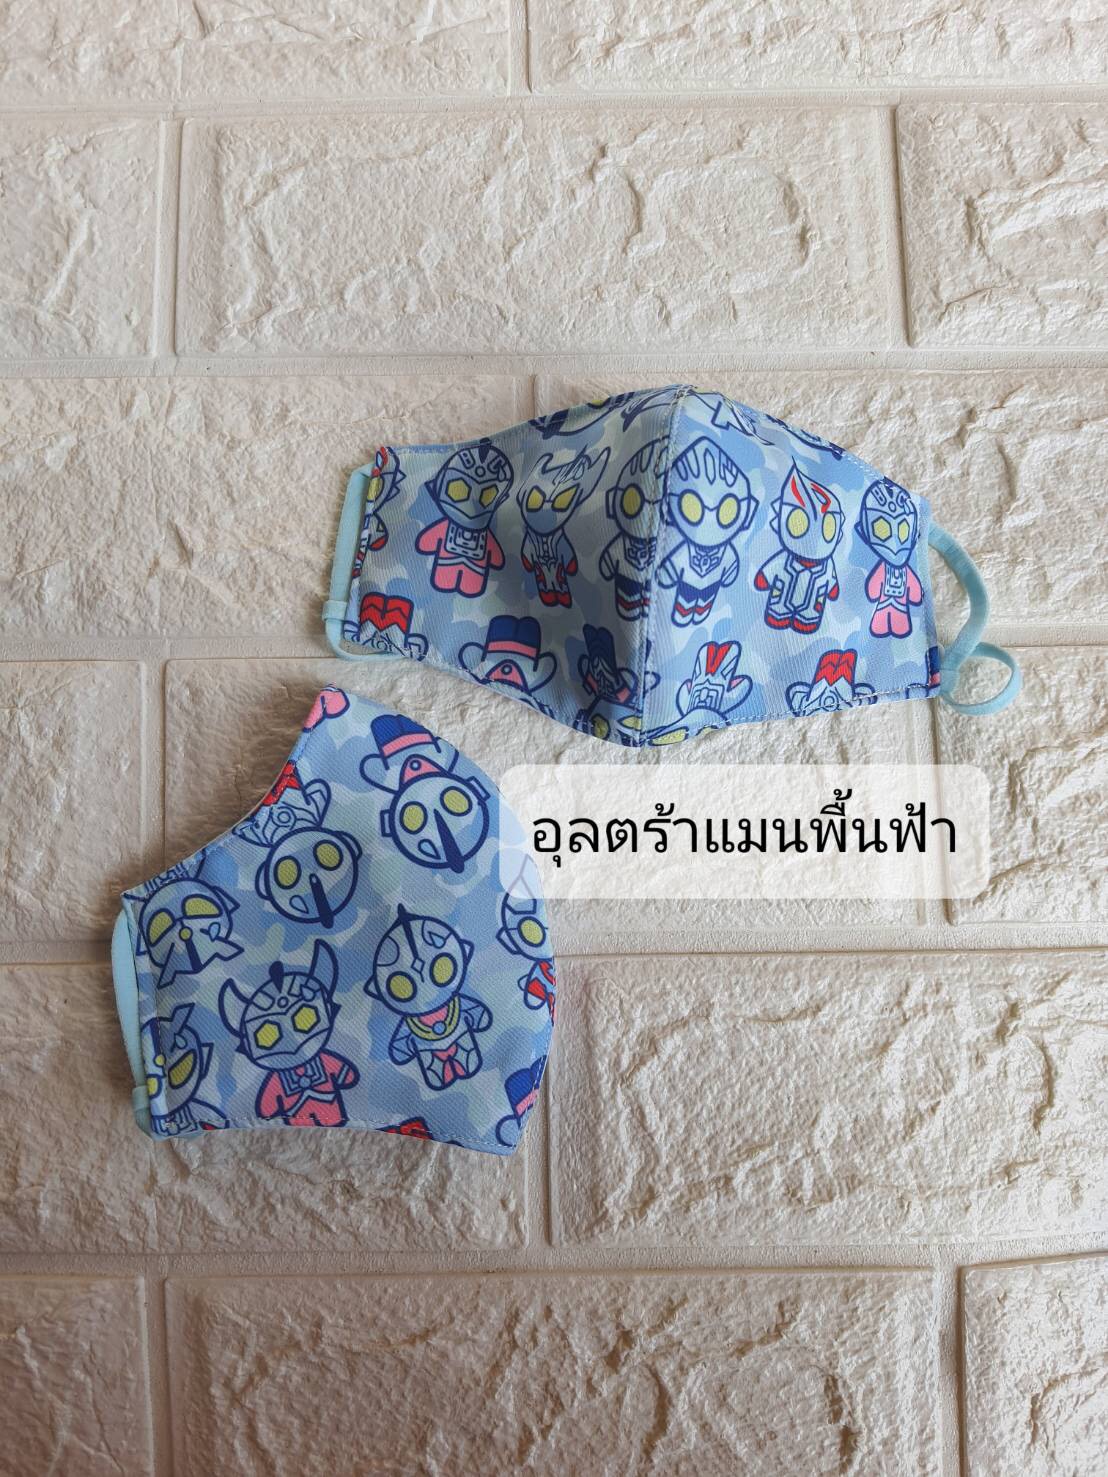 หน้ากากผ้าโพลีสะท้อนน้ำพร้อมสายคล้องคอ By Thanchanid Shop